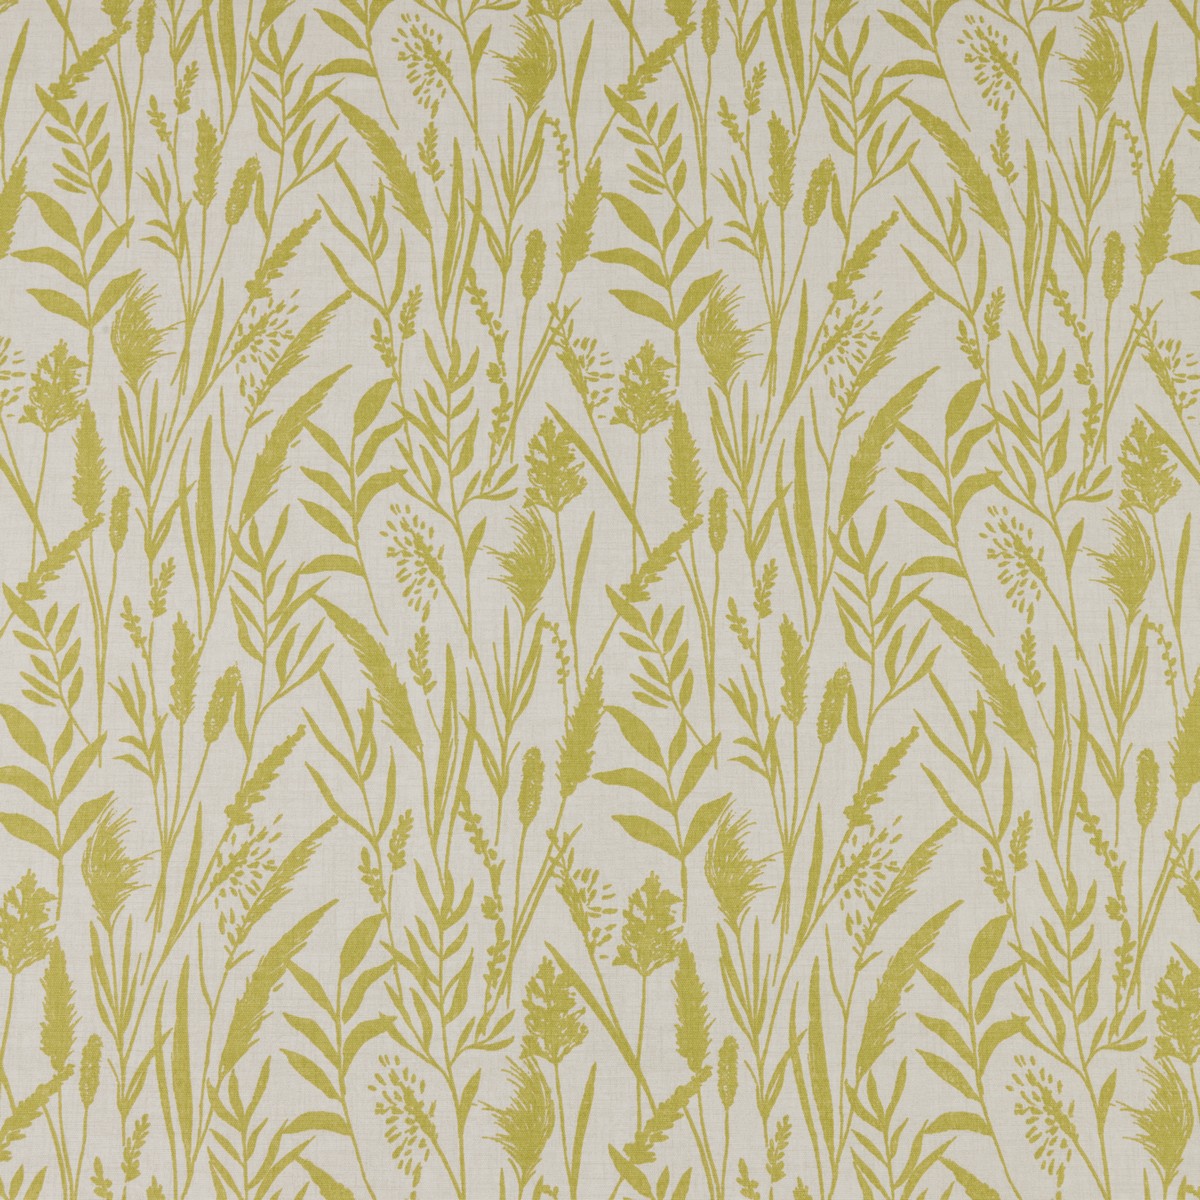 Wild Grasses Citrus Fabric by iLiv